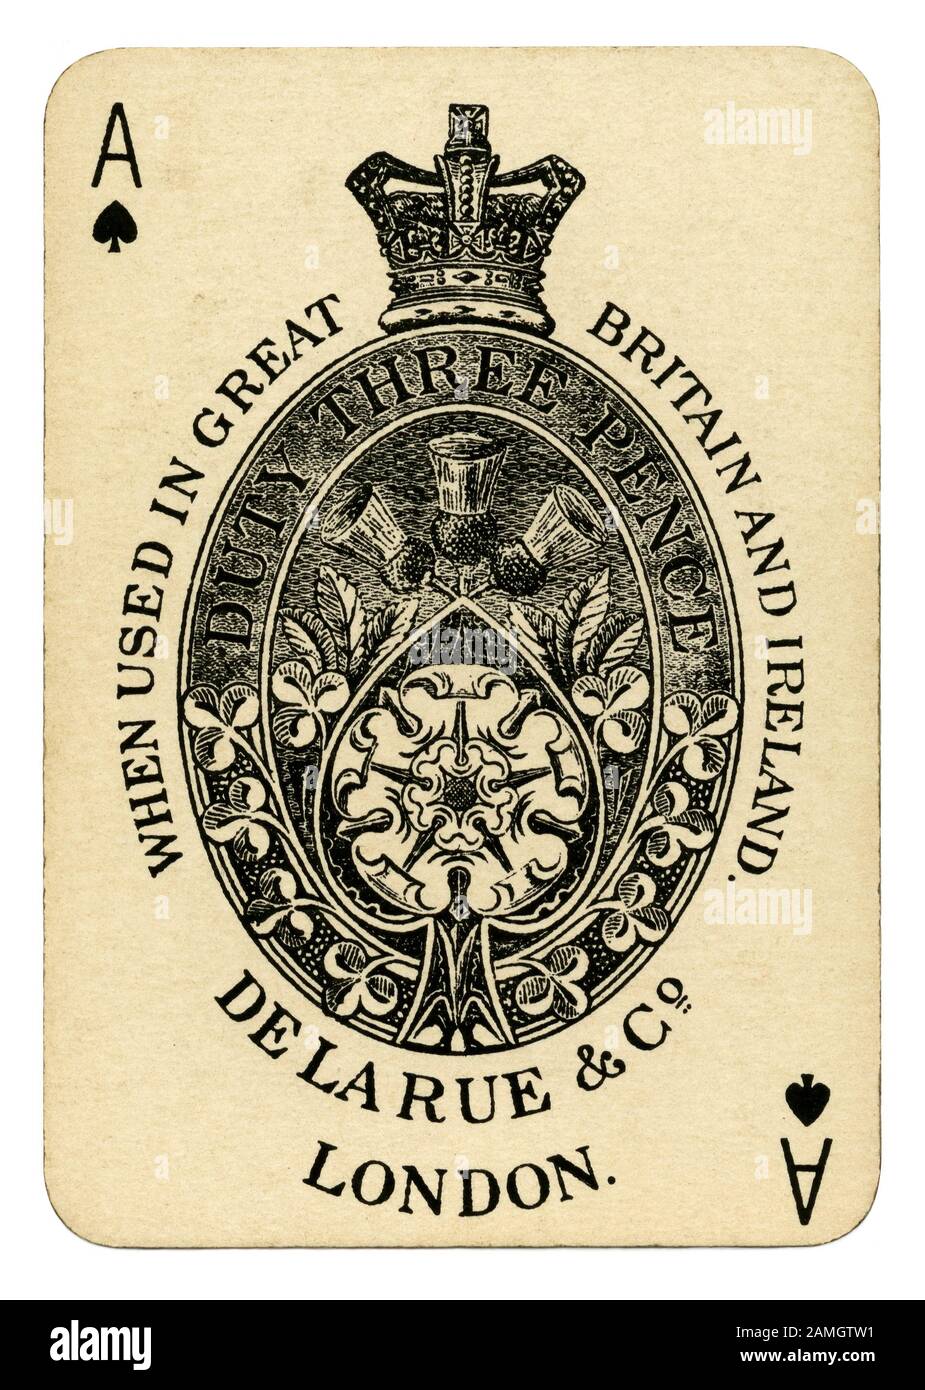 Eine alte illustrative Ace of Spades - von einer fördernden Kartenspiel von einem L Clarke und Co den Stirling alte Lowland Scotch Whisky c 1910. Karte steuern in England 1588 ein Wappen von der Druckerei begann auf dem Ace of Spades erforderlich war. Mit großen und dekoriert Verschönerung dieses identifiziert den Drucker als 'Stempel Steuer" bezahlt. Diese ACE-Version hat eine Krone, schottische Distel und eine Englische Rose und zeigt den Teekocher, De La Rue und Co. ist Pflicht von 3 Pence gezahlt. Obwohl diese Steuer im Jahre 1960 abgeschafft wurde, dieses traditionelle Suchen Ace of Spades ist oft noch verwendet. Stockfoto